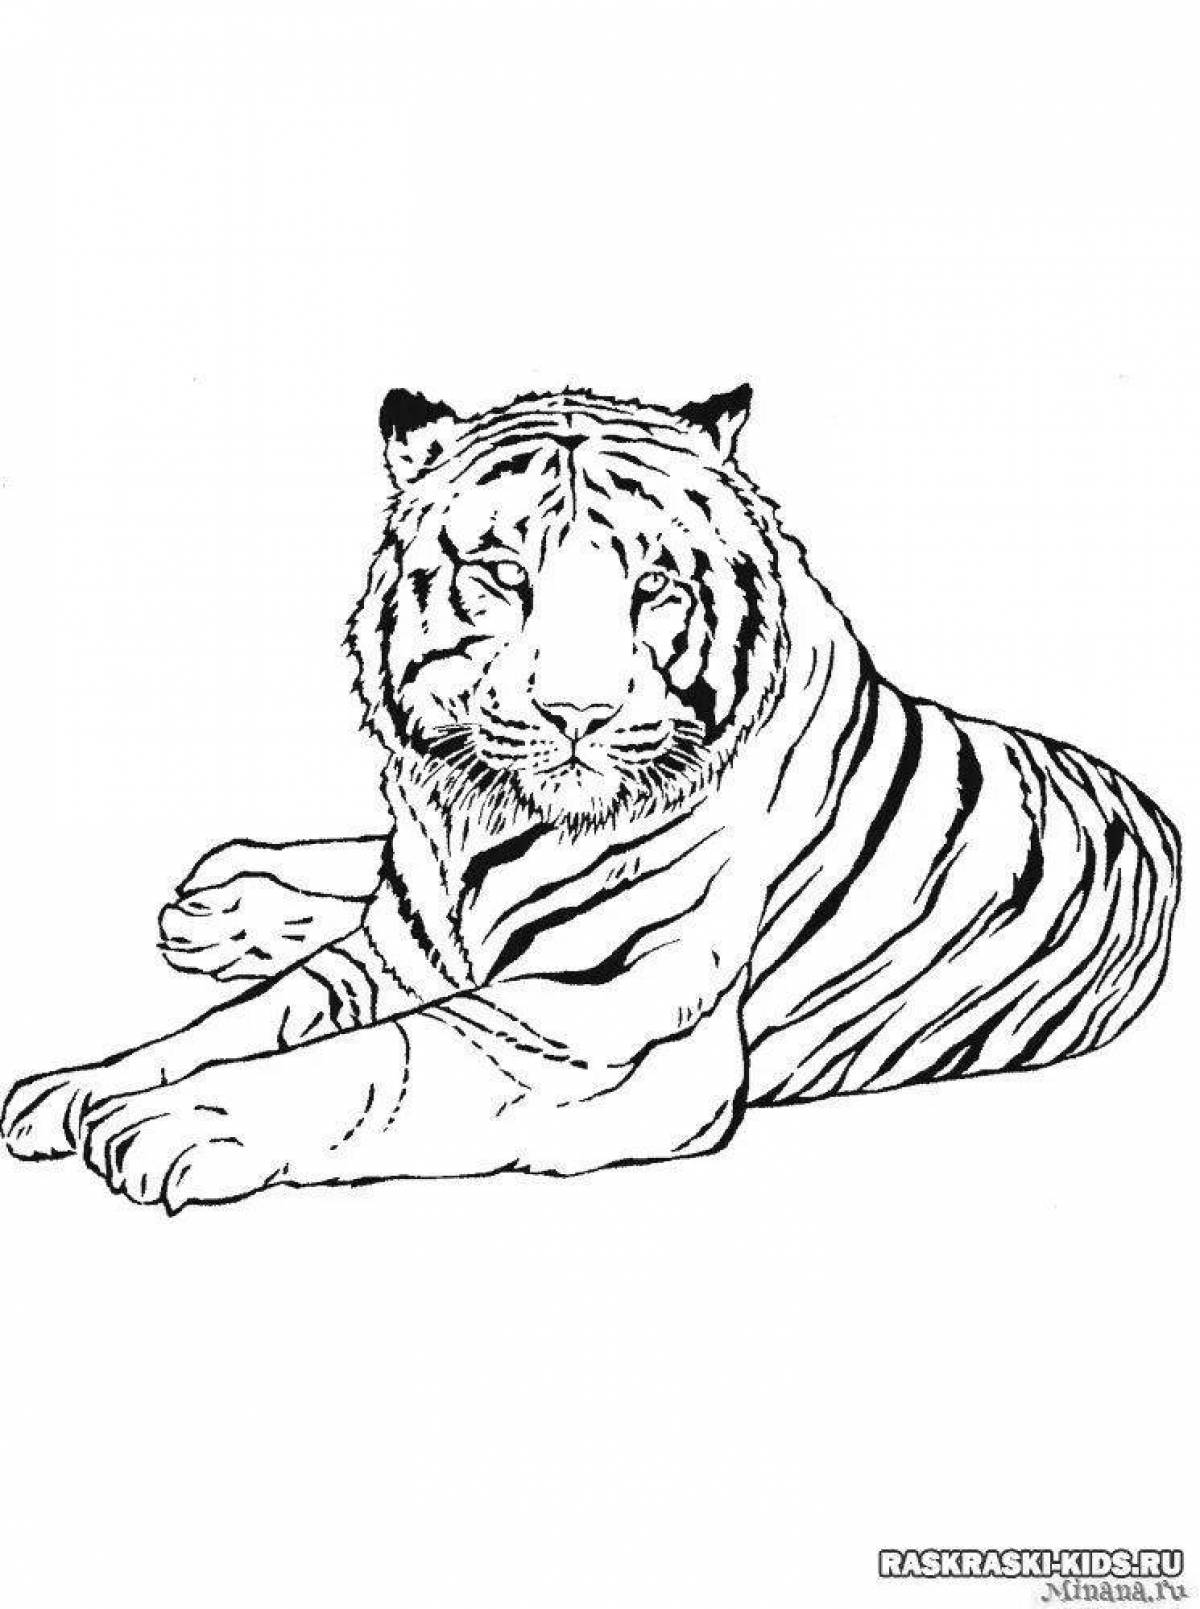 Манящий рисунок тигра